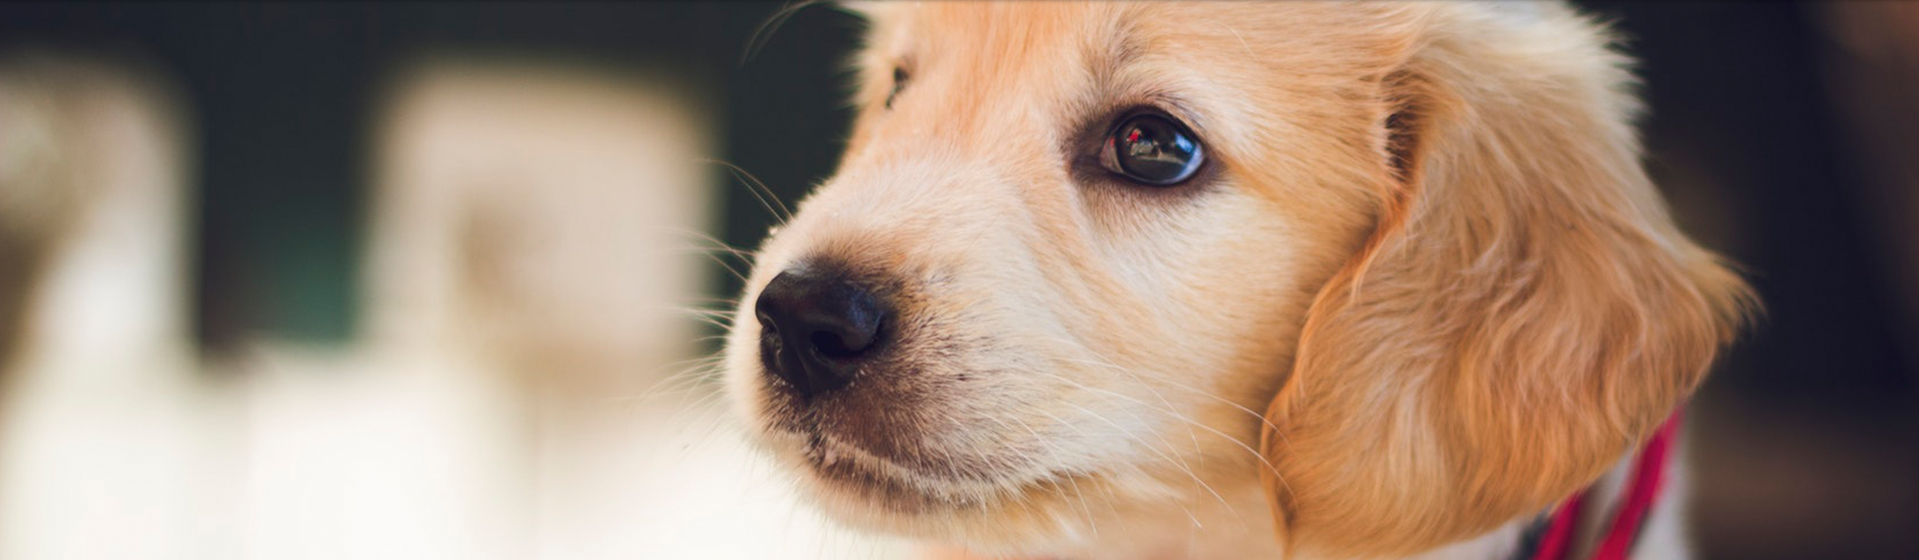 Dogsalon Vivi 兵庫県姫路市を拠点に犬たちのためのペットホテル トリミング ドッグサロンを行っています